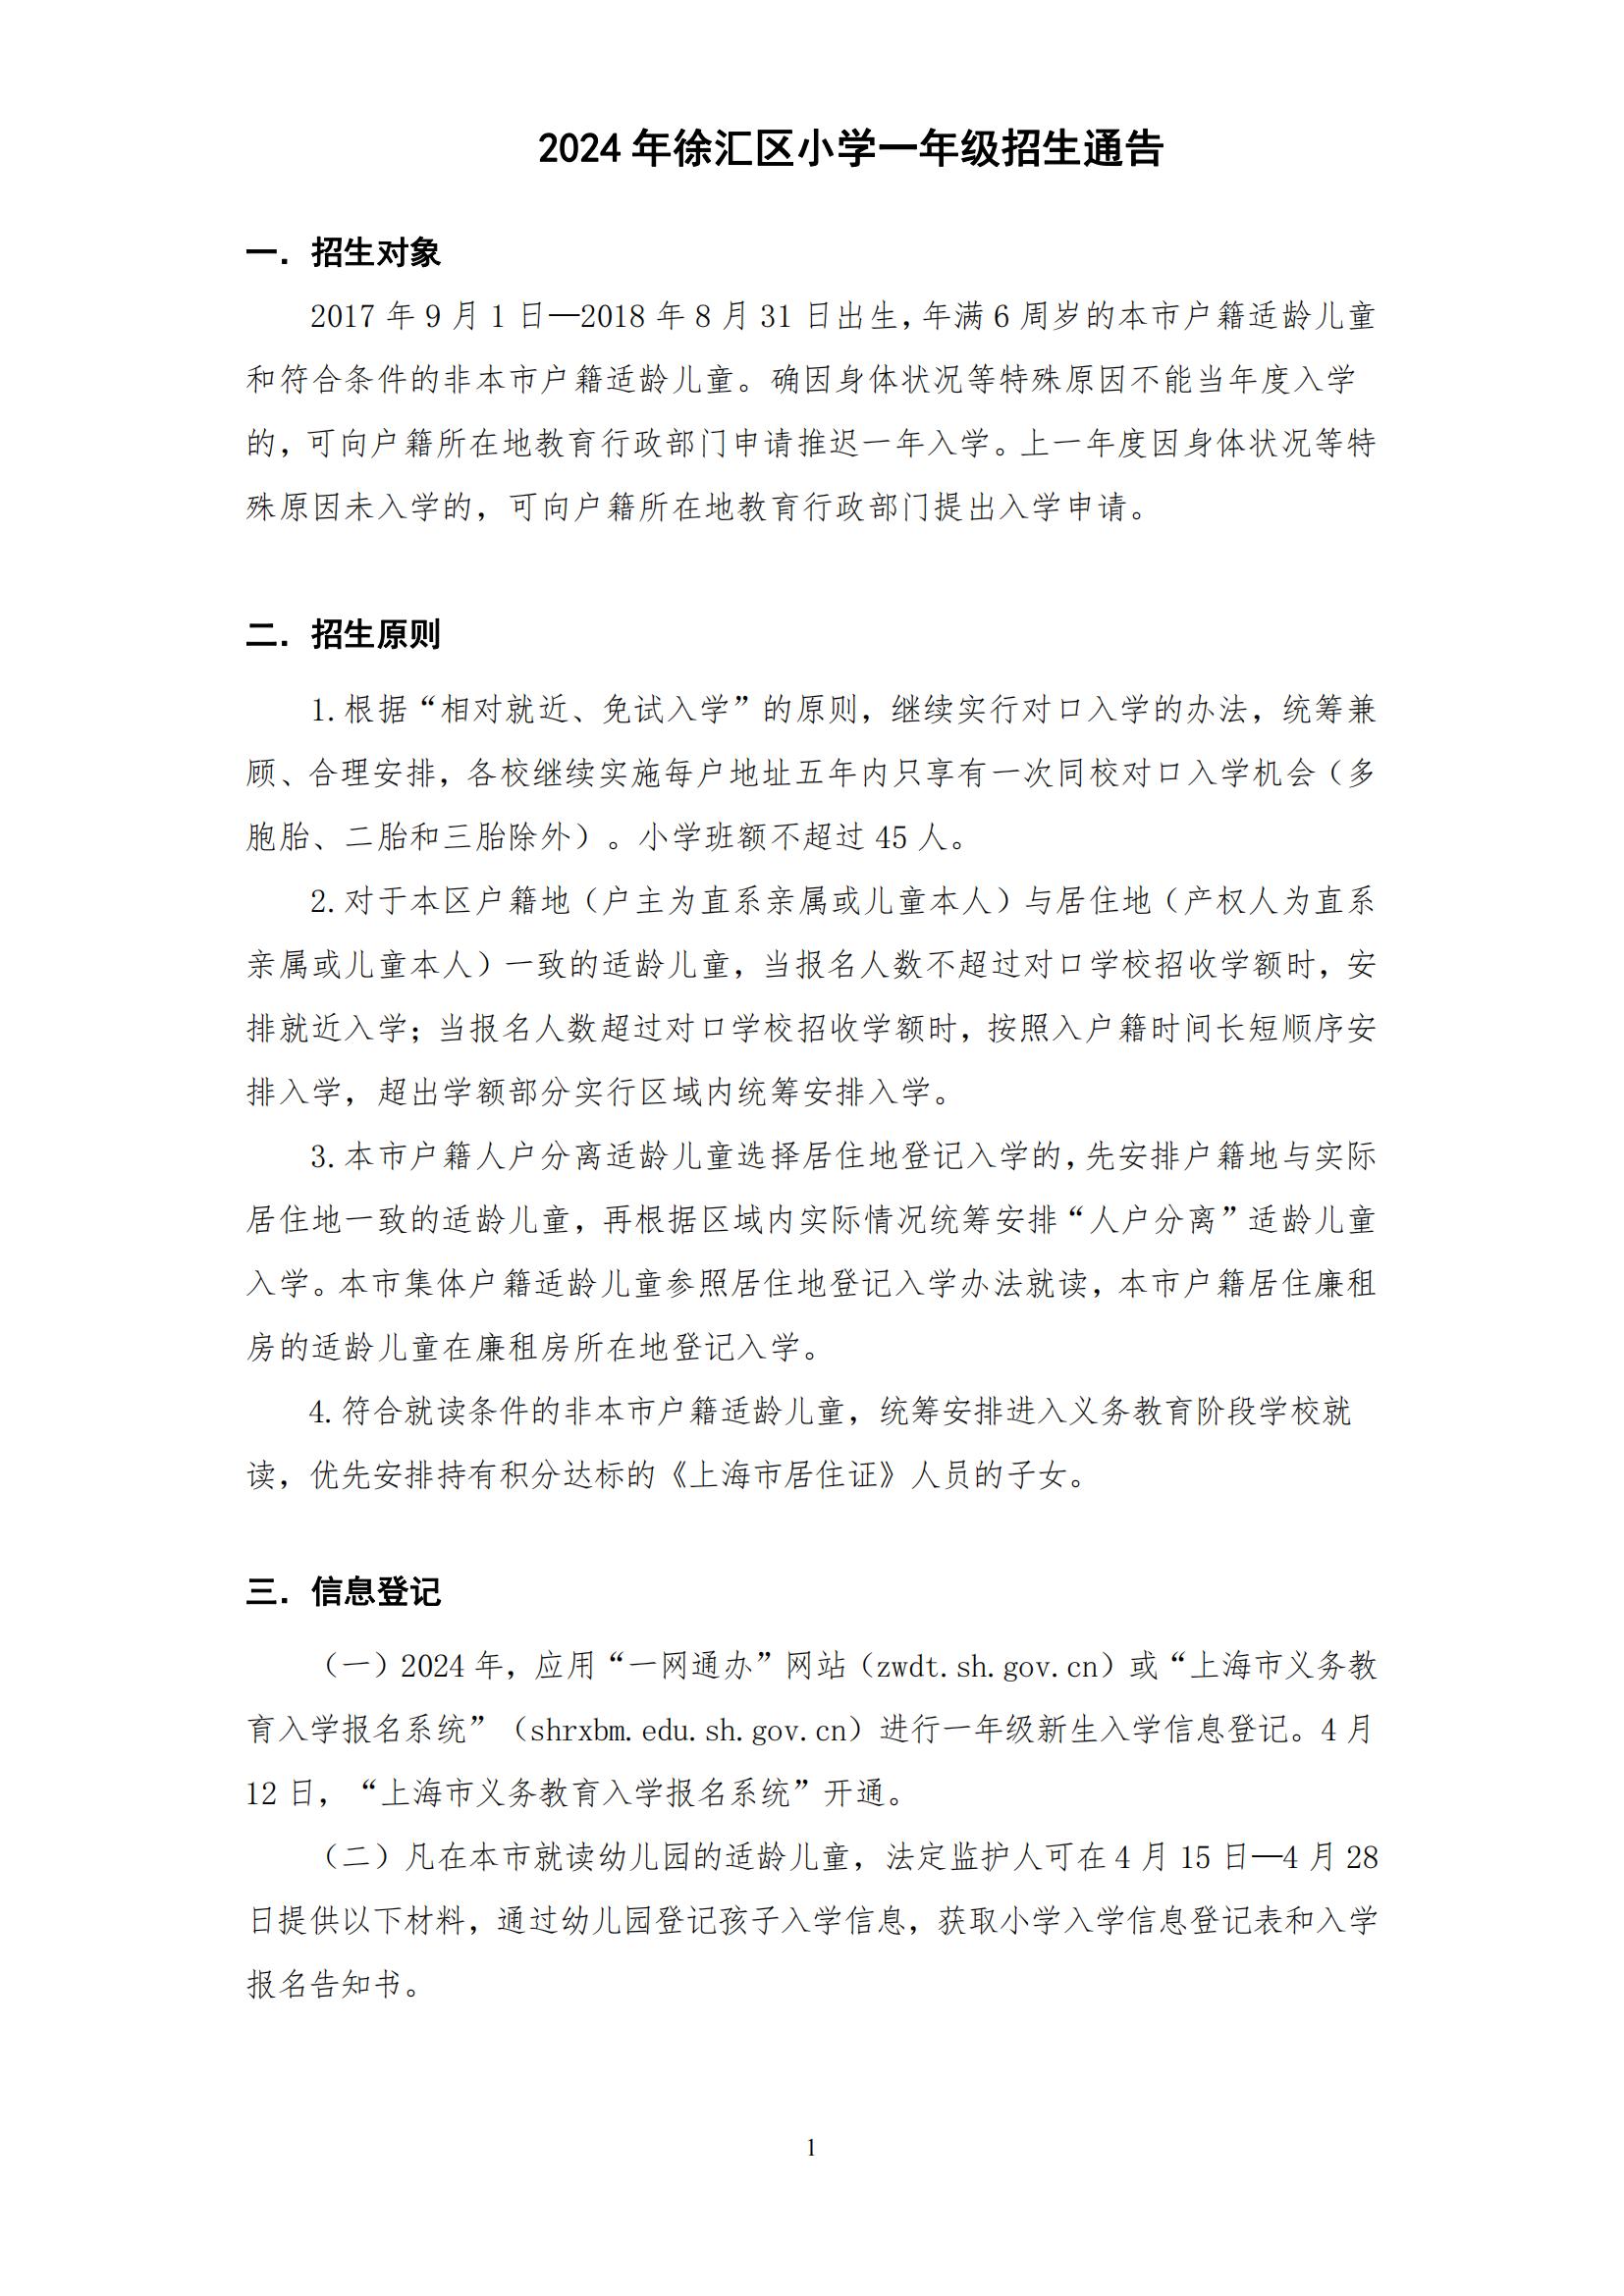 2024年徐汇区小学一年级招生通告(3)_00.jpg